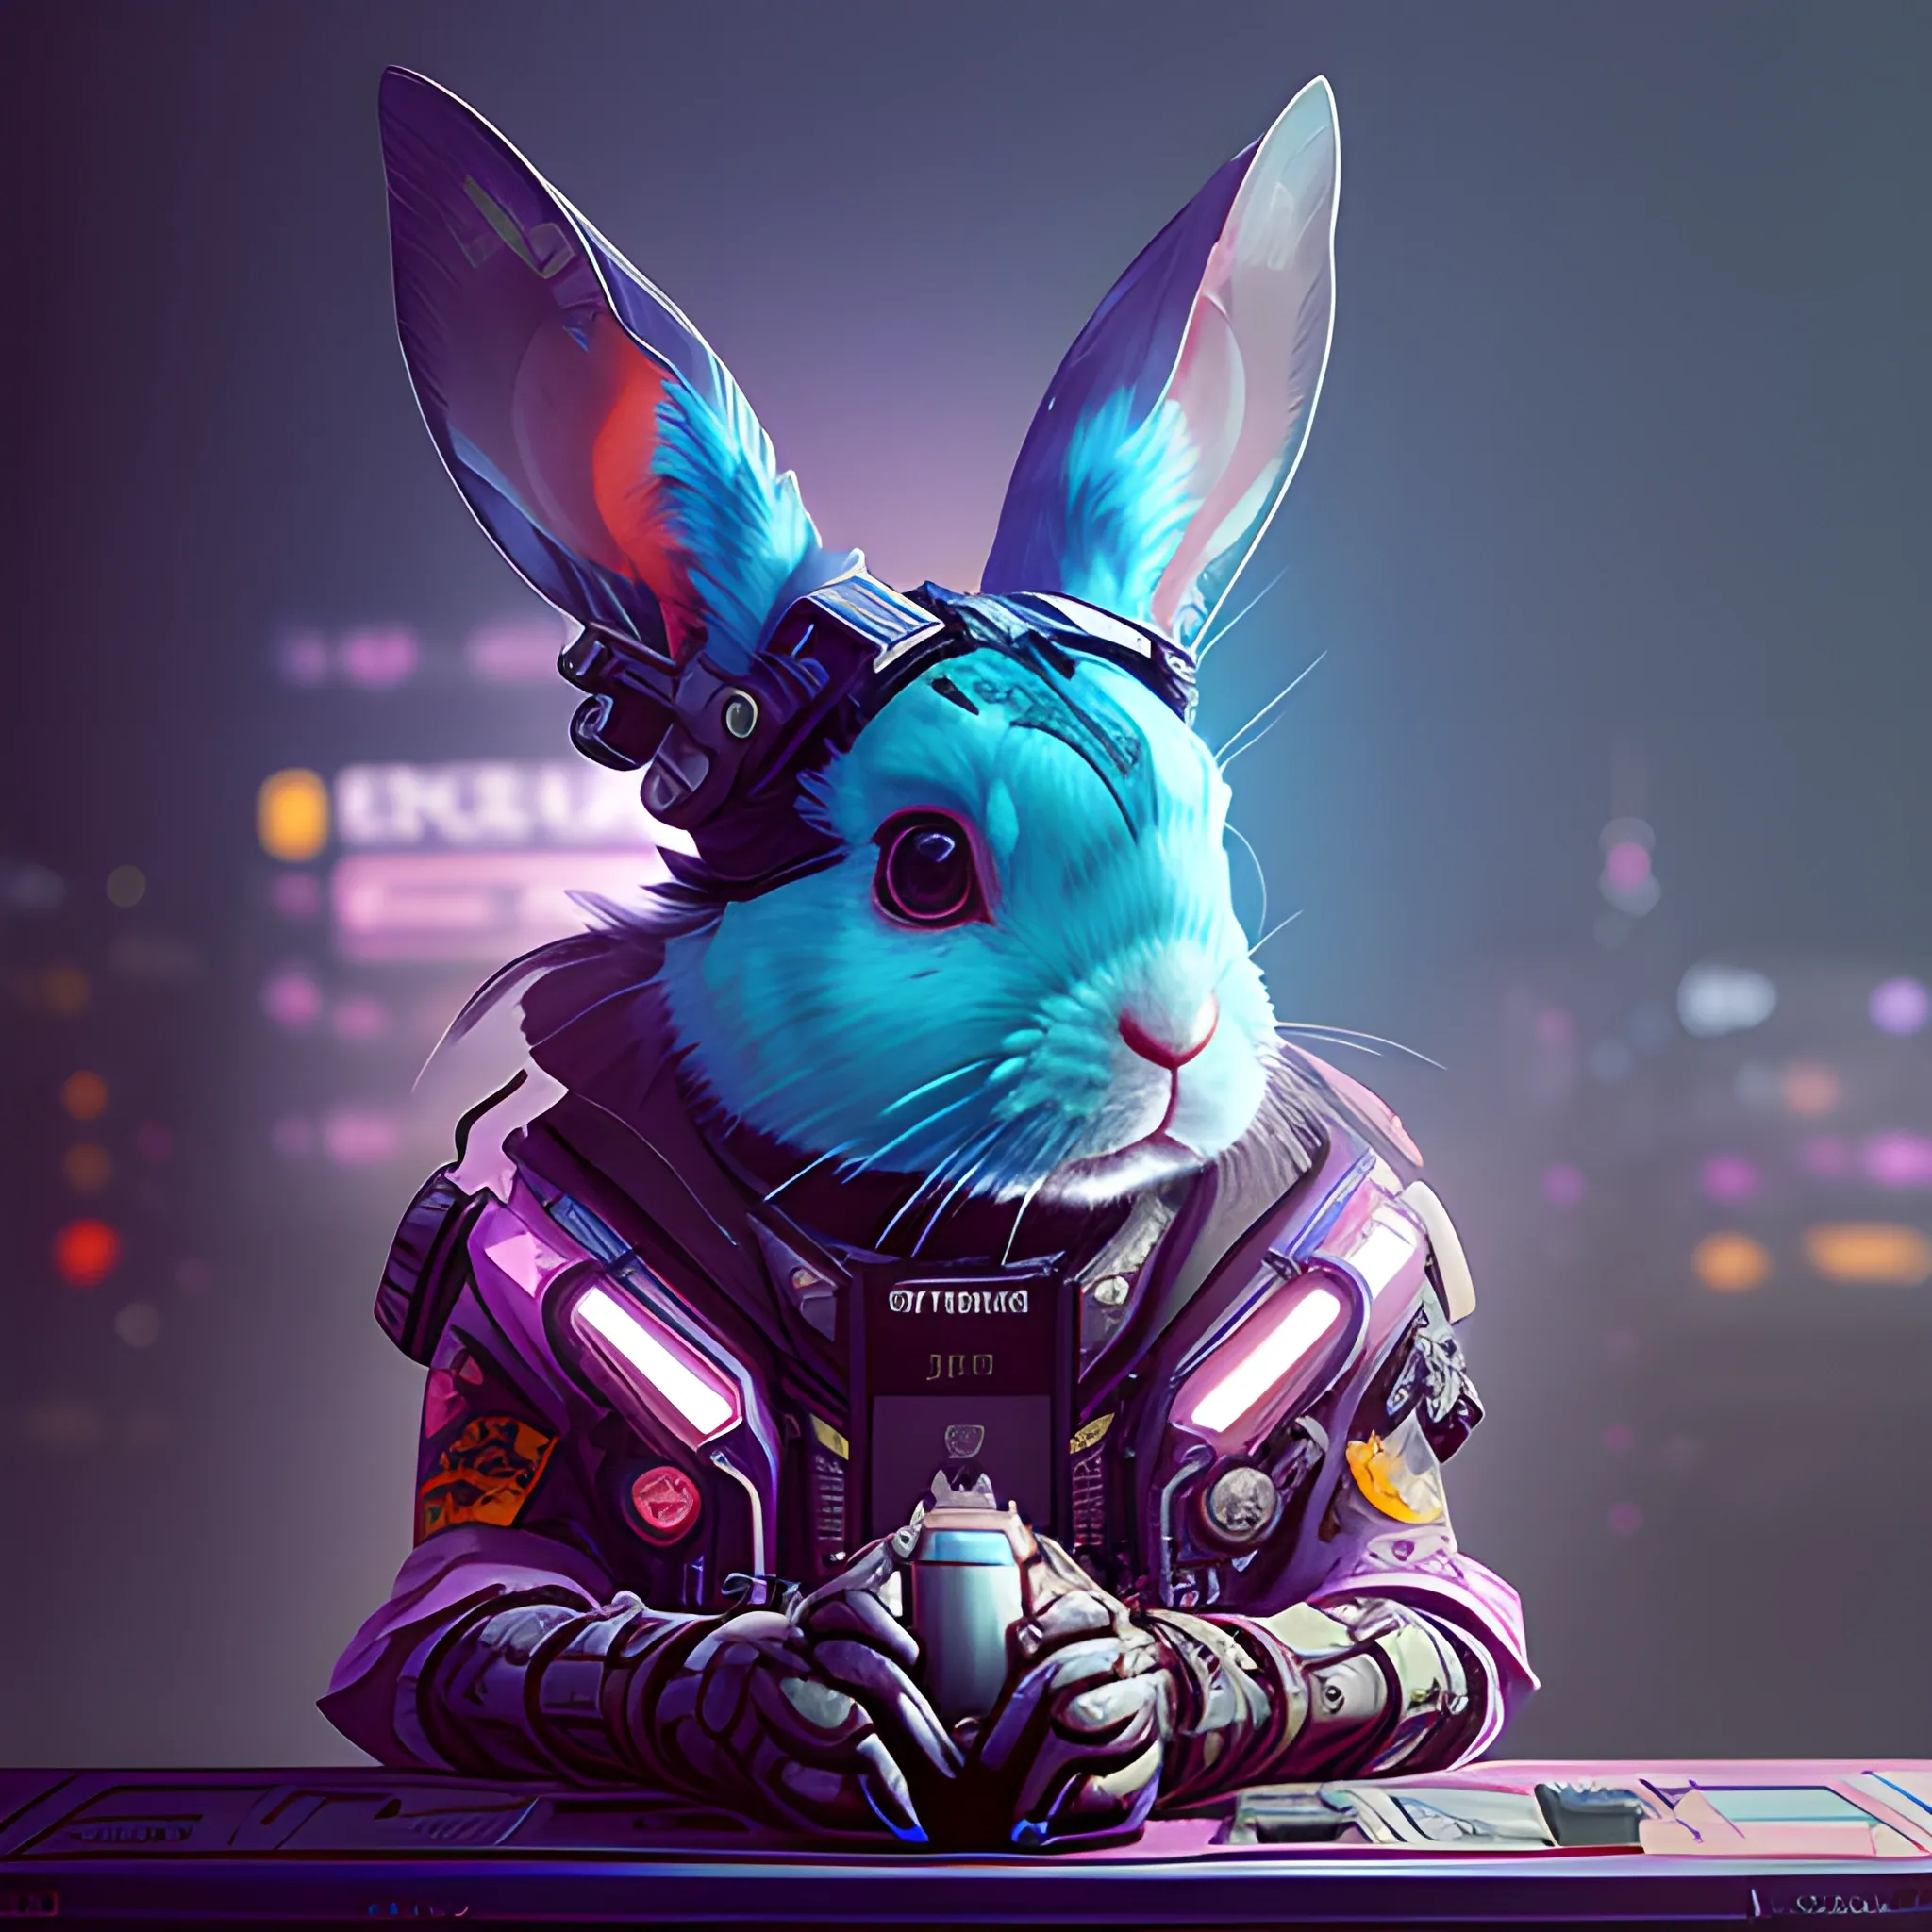 a beautiful portrait of a cute cyberpunk rabbit by sandra chevri ...